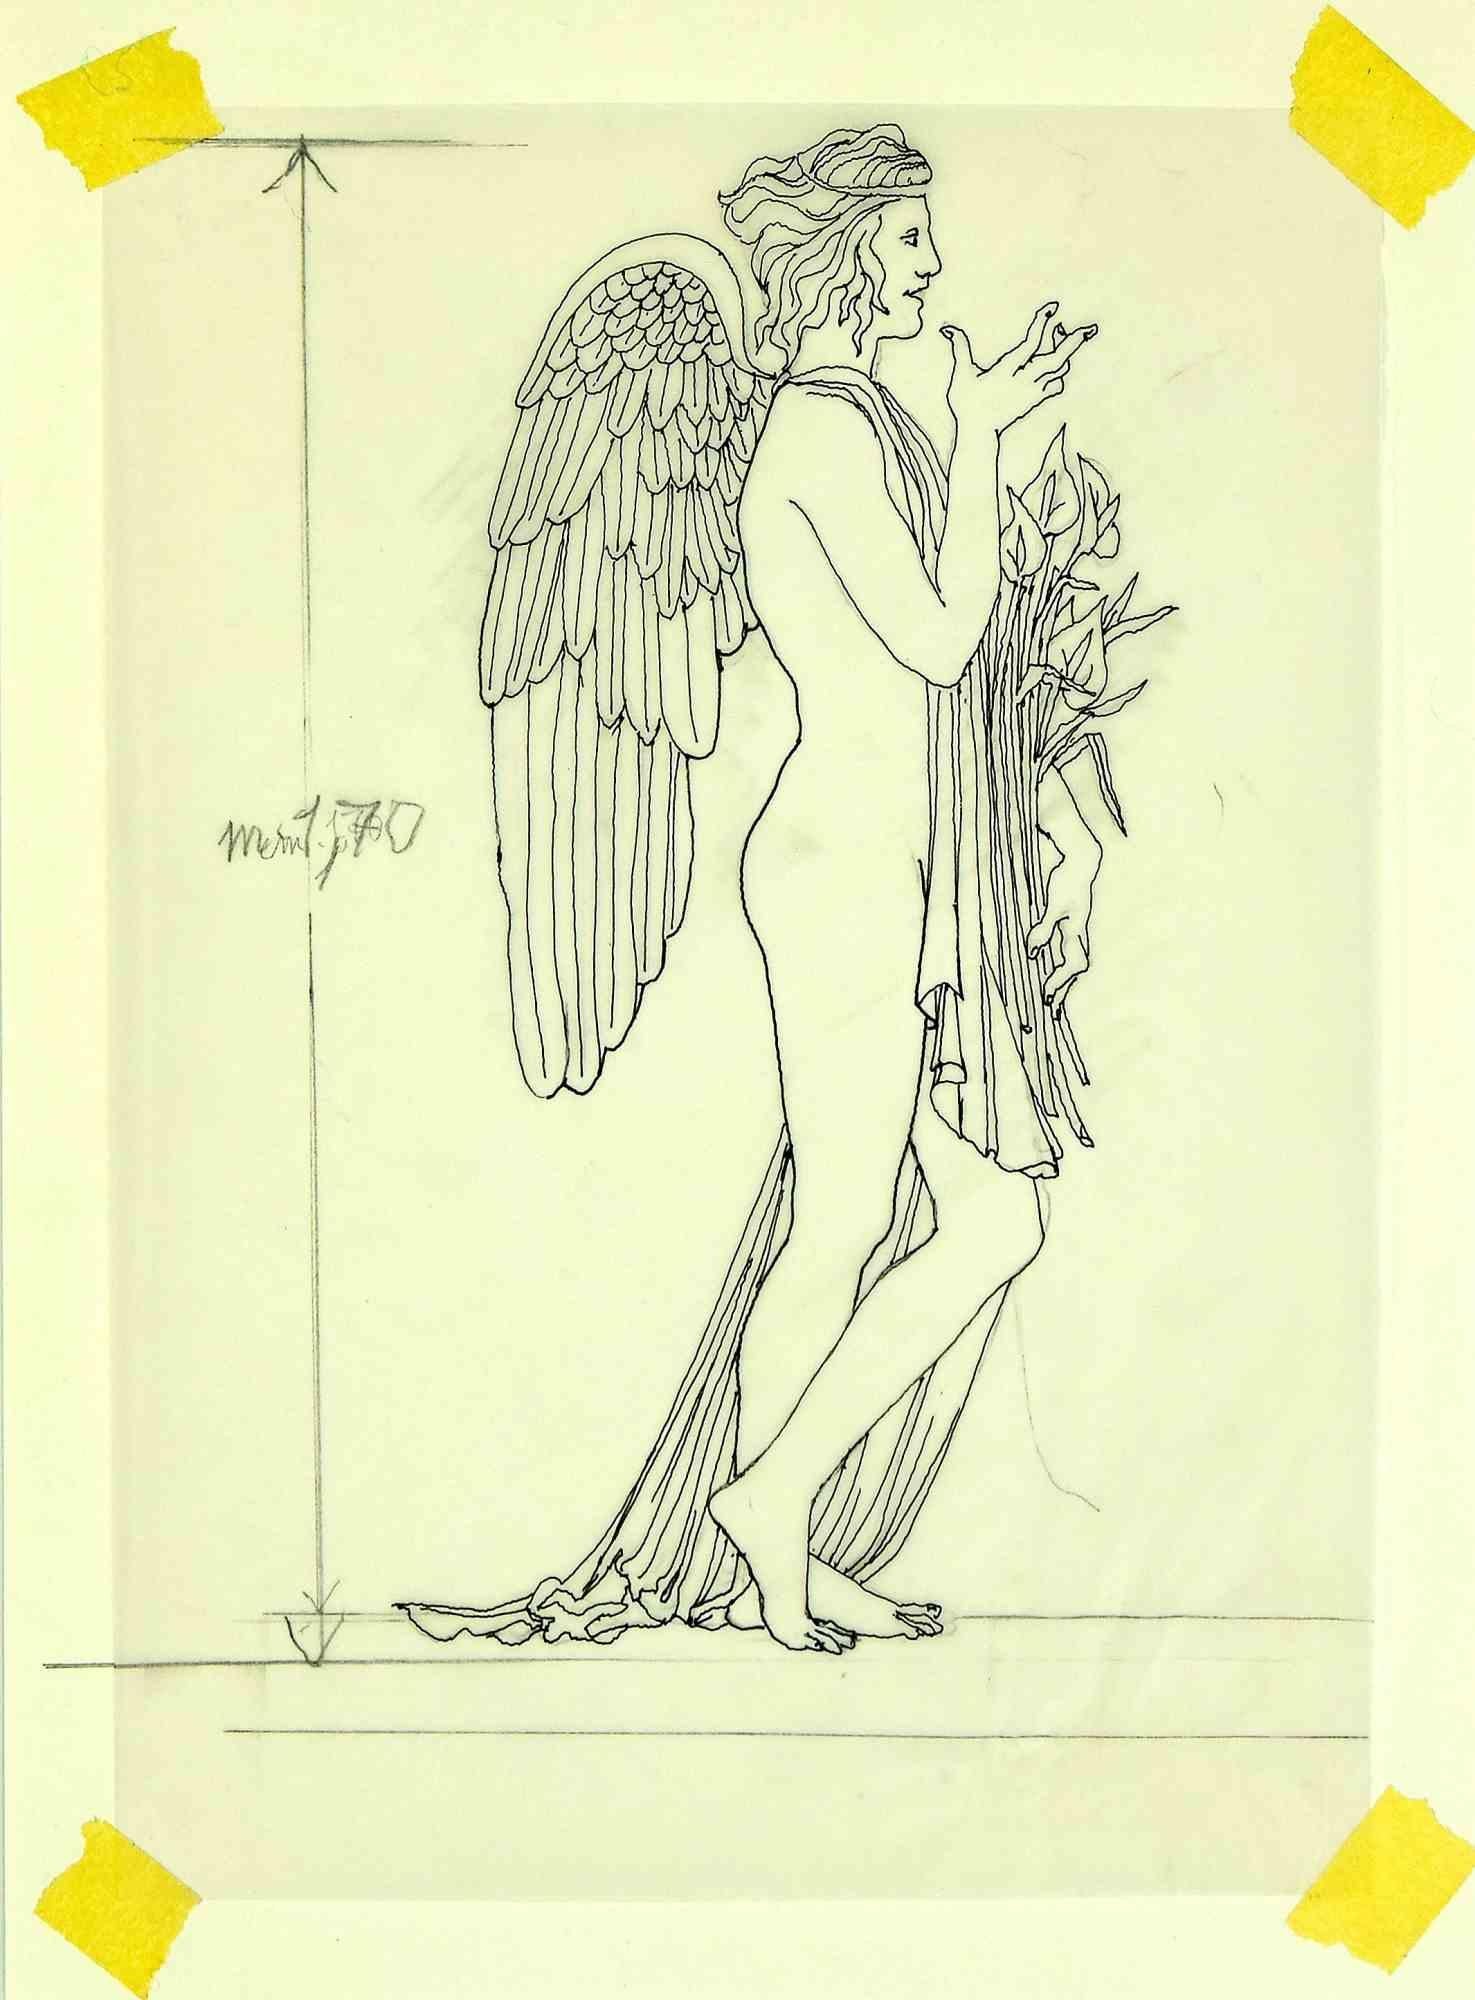 Angle with Flowers est une œuvre d'art moderne réalisée par Leo Guida dans les années 1970.

Bon état.

Dessin à l'encre sur papier.

Leo Guida a su tisser un entretien productif sur l'art et la fonction de l'artiste avec de nombreuses générations